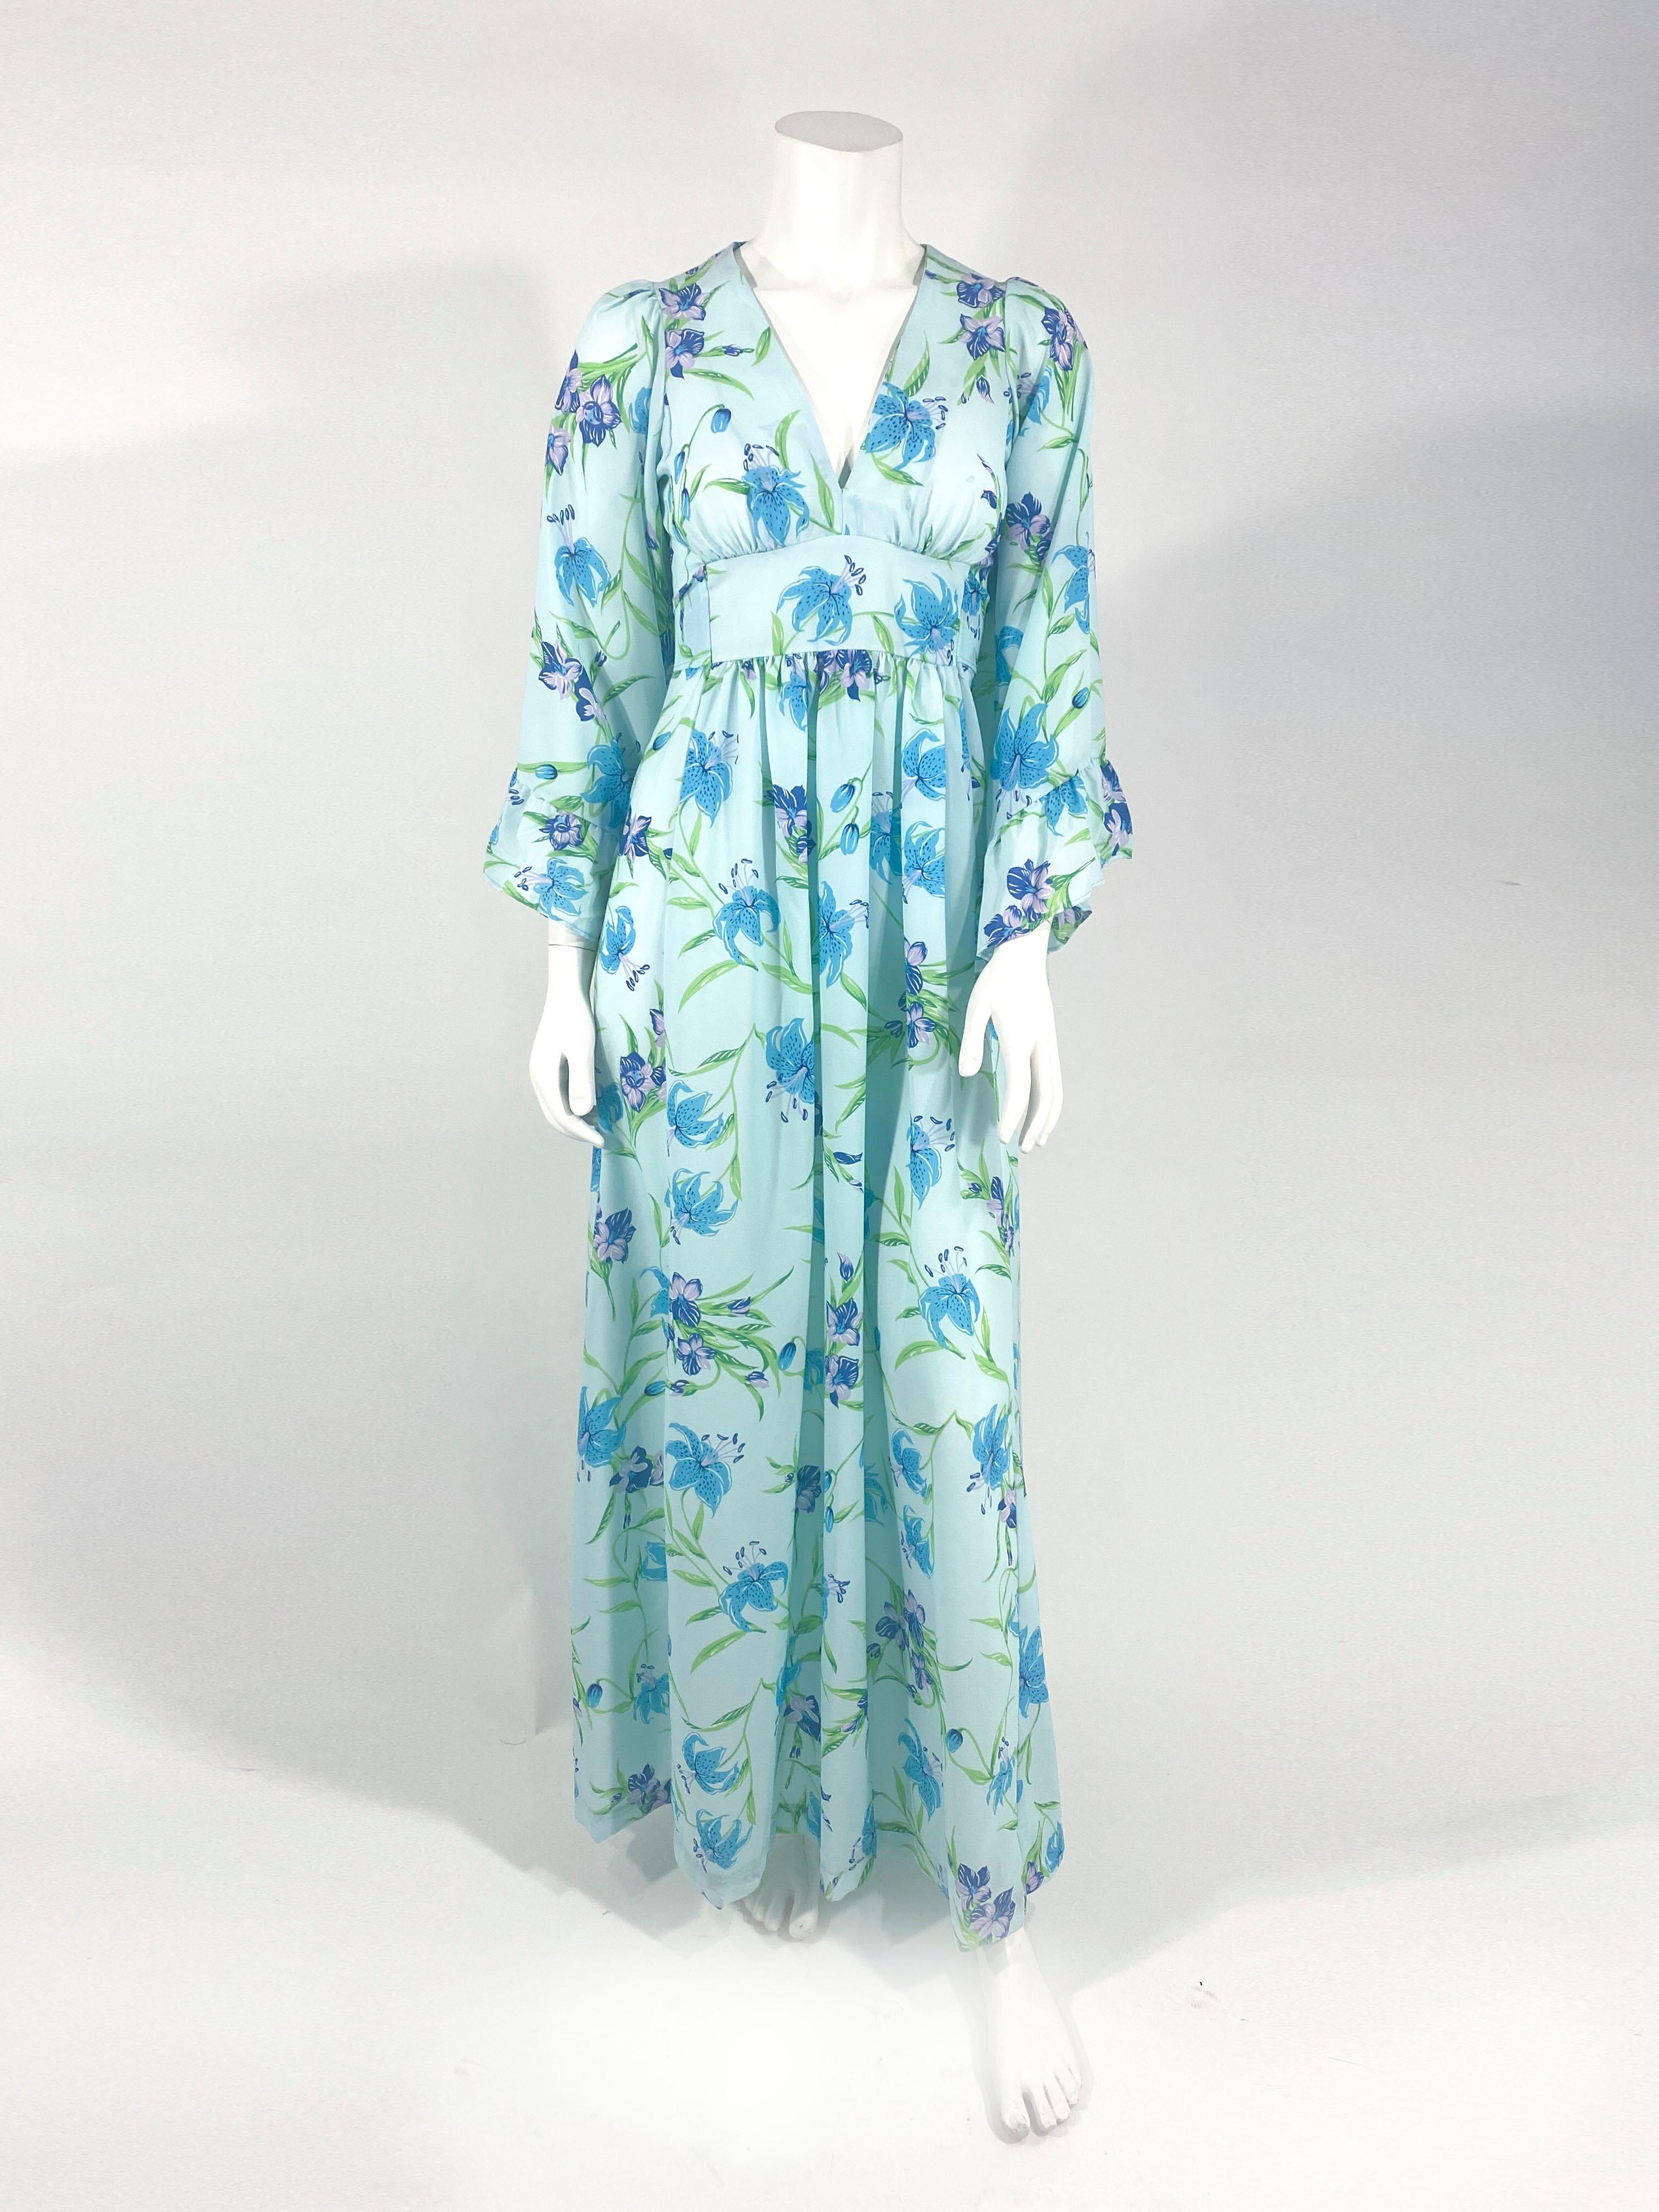 robe de bohème des années 1970 à imprimé floral aqua, avec un décolleté plongeant, des manches cloche à volants, une ceinture empire qui se noue sur la fermeture éclair du dos.